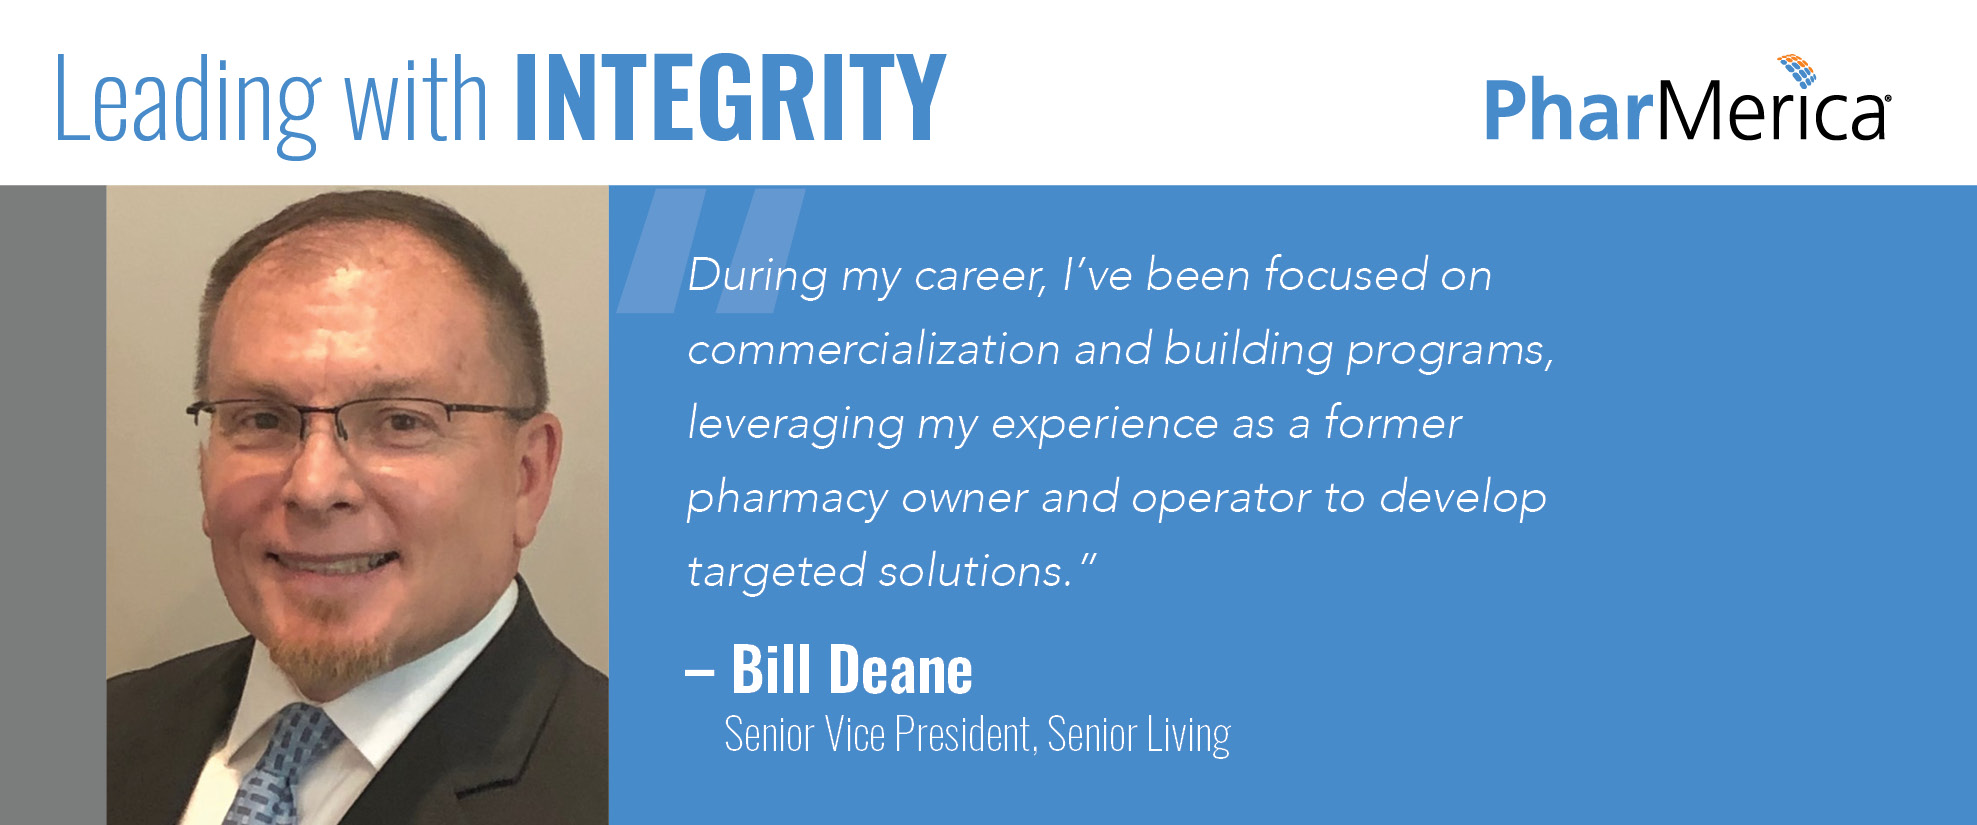 Bill Deane Integrity 